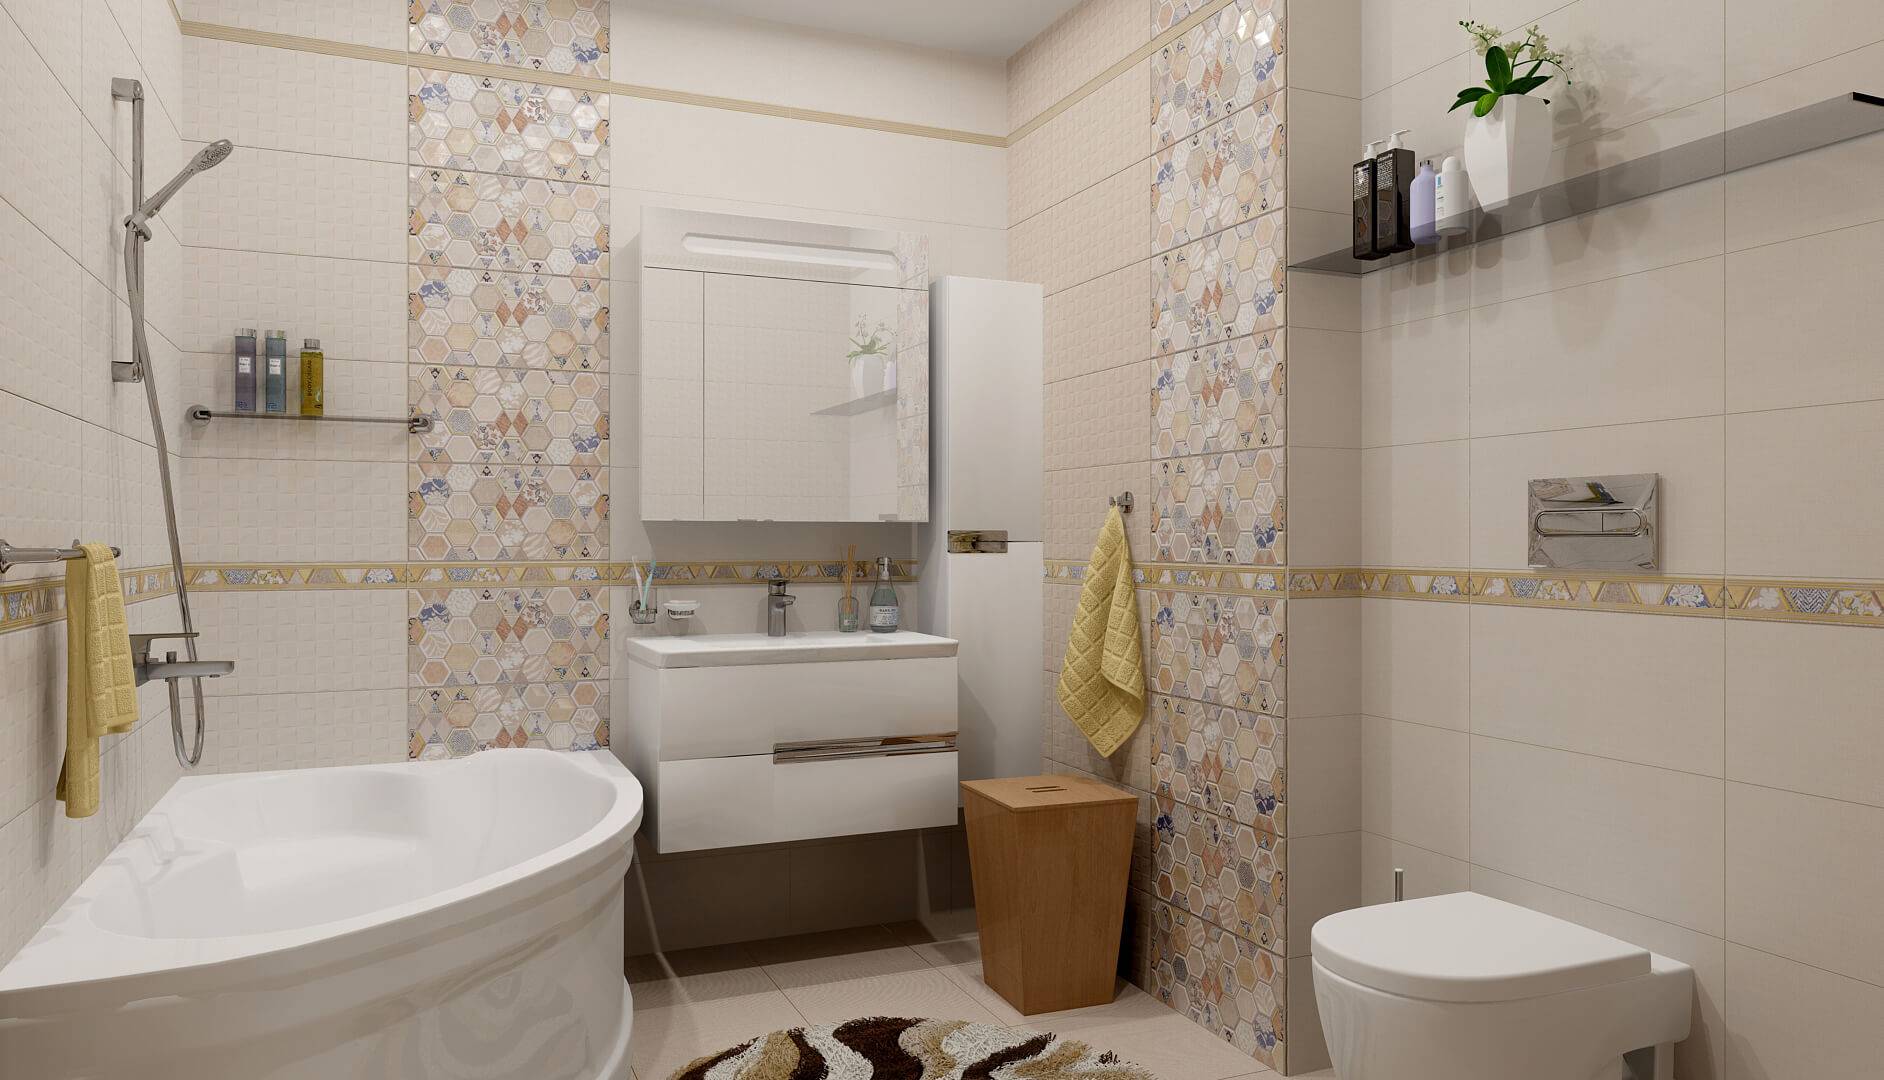 Как выбрать плитку для ванной комнаты и туалета: матовую или глянцевую, по цвету и дизайну, советы дизайнеров